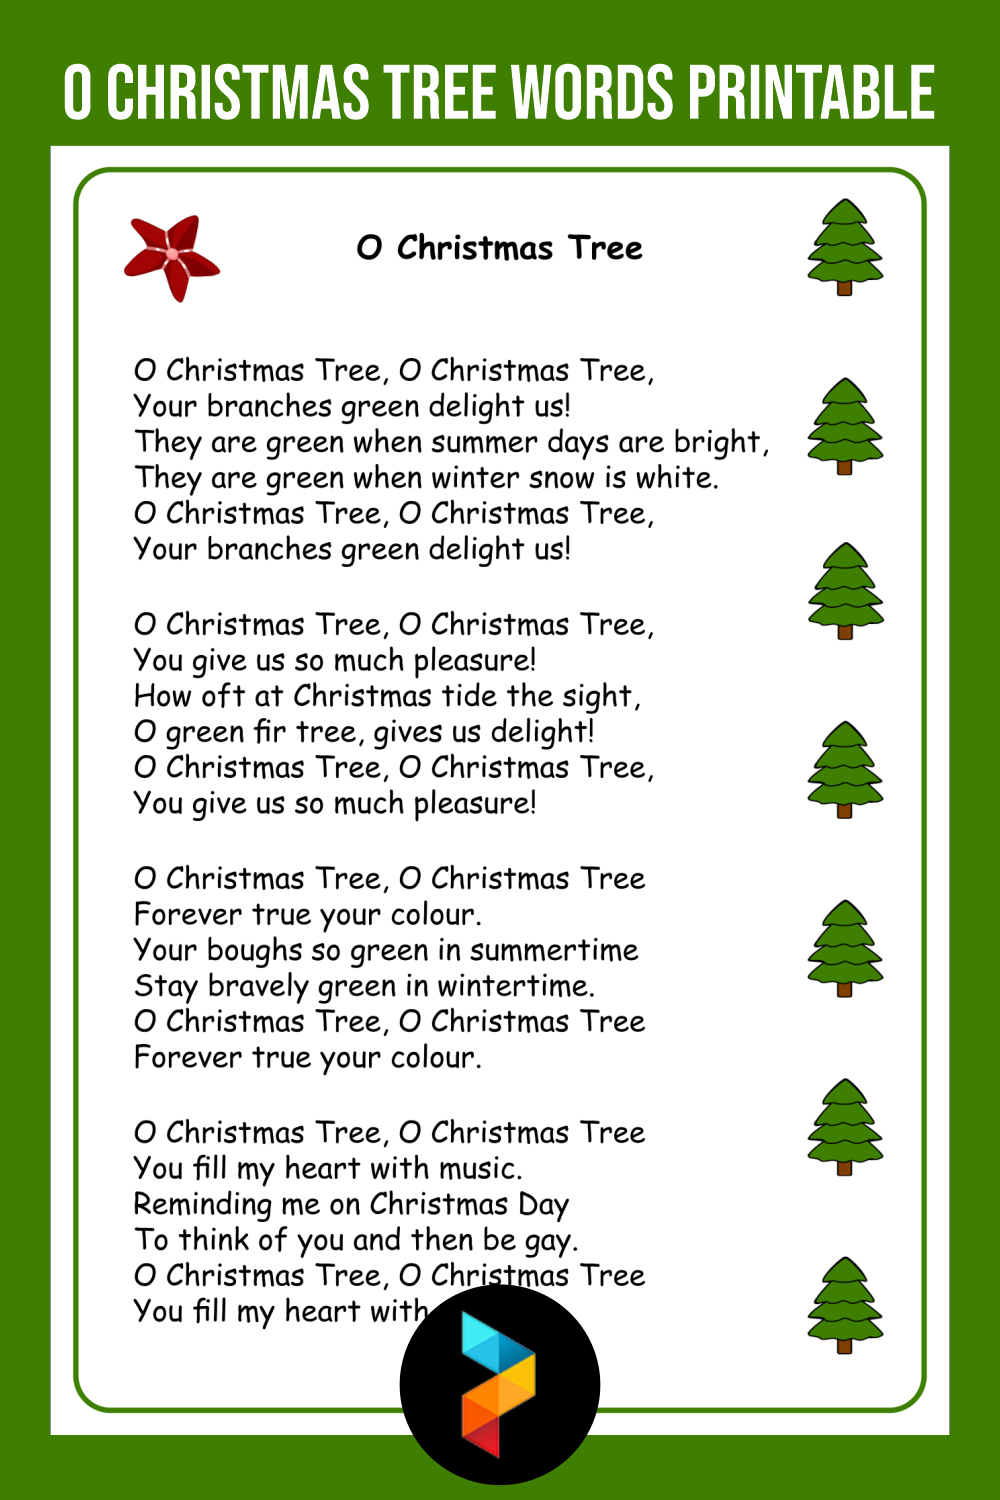 words-to-o-christmas-tree-merry-christmas-2021